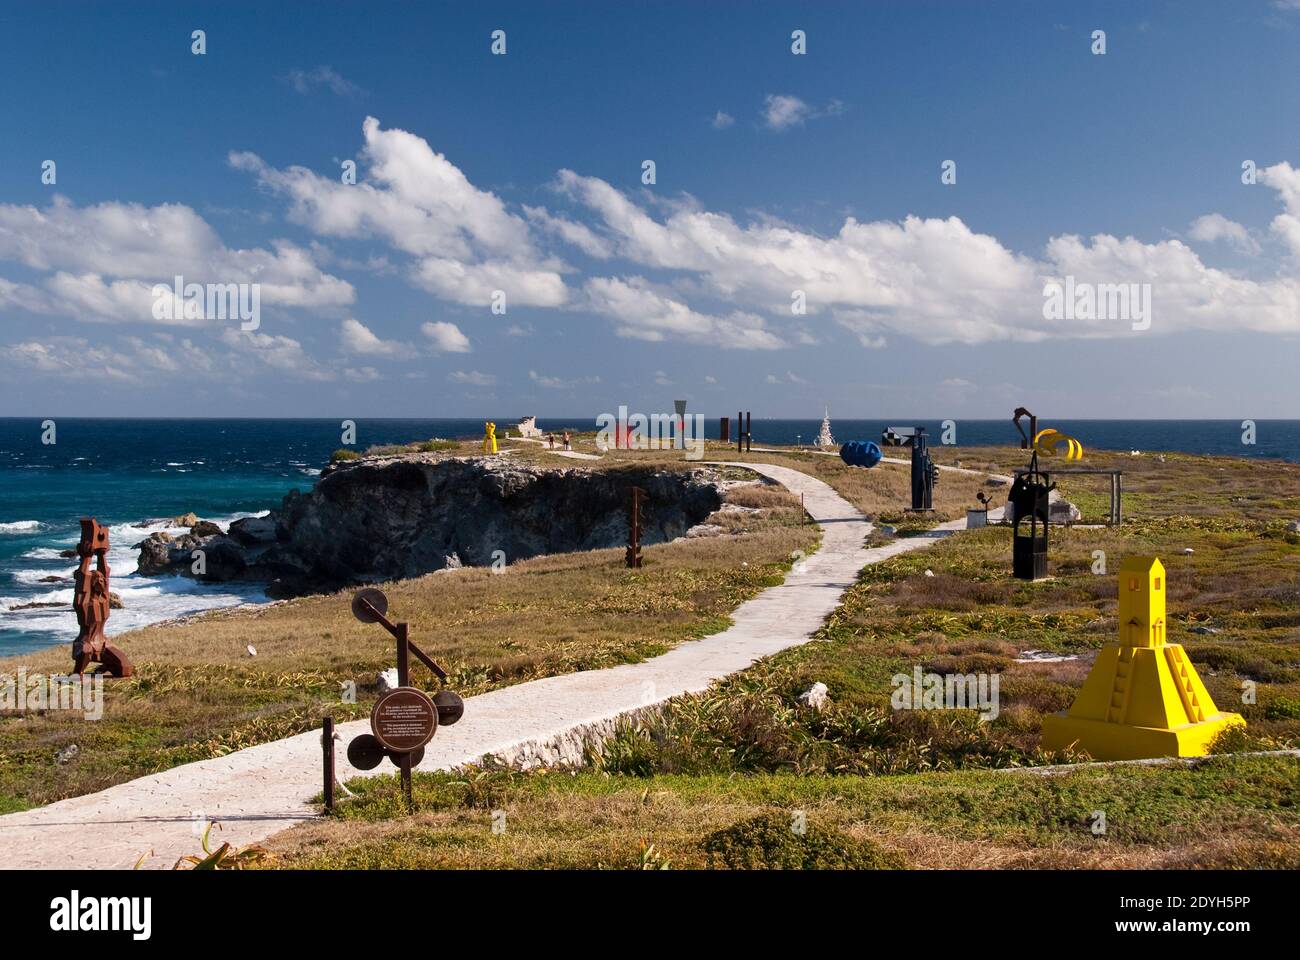 Les visiteurs parcourent les sentiers de Punta sur, un jardin de sculptures situé à l'extrémité sud de l'île Mujeres, Quintana Roo, Mexique. Banque D'Images